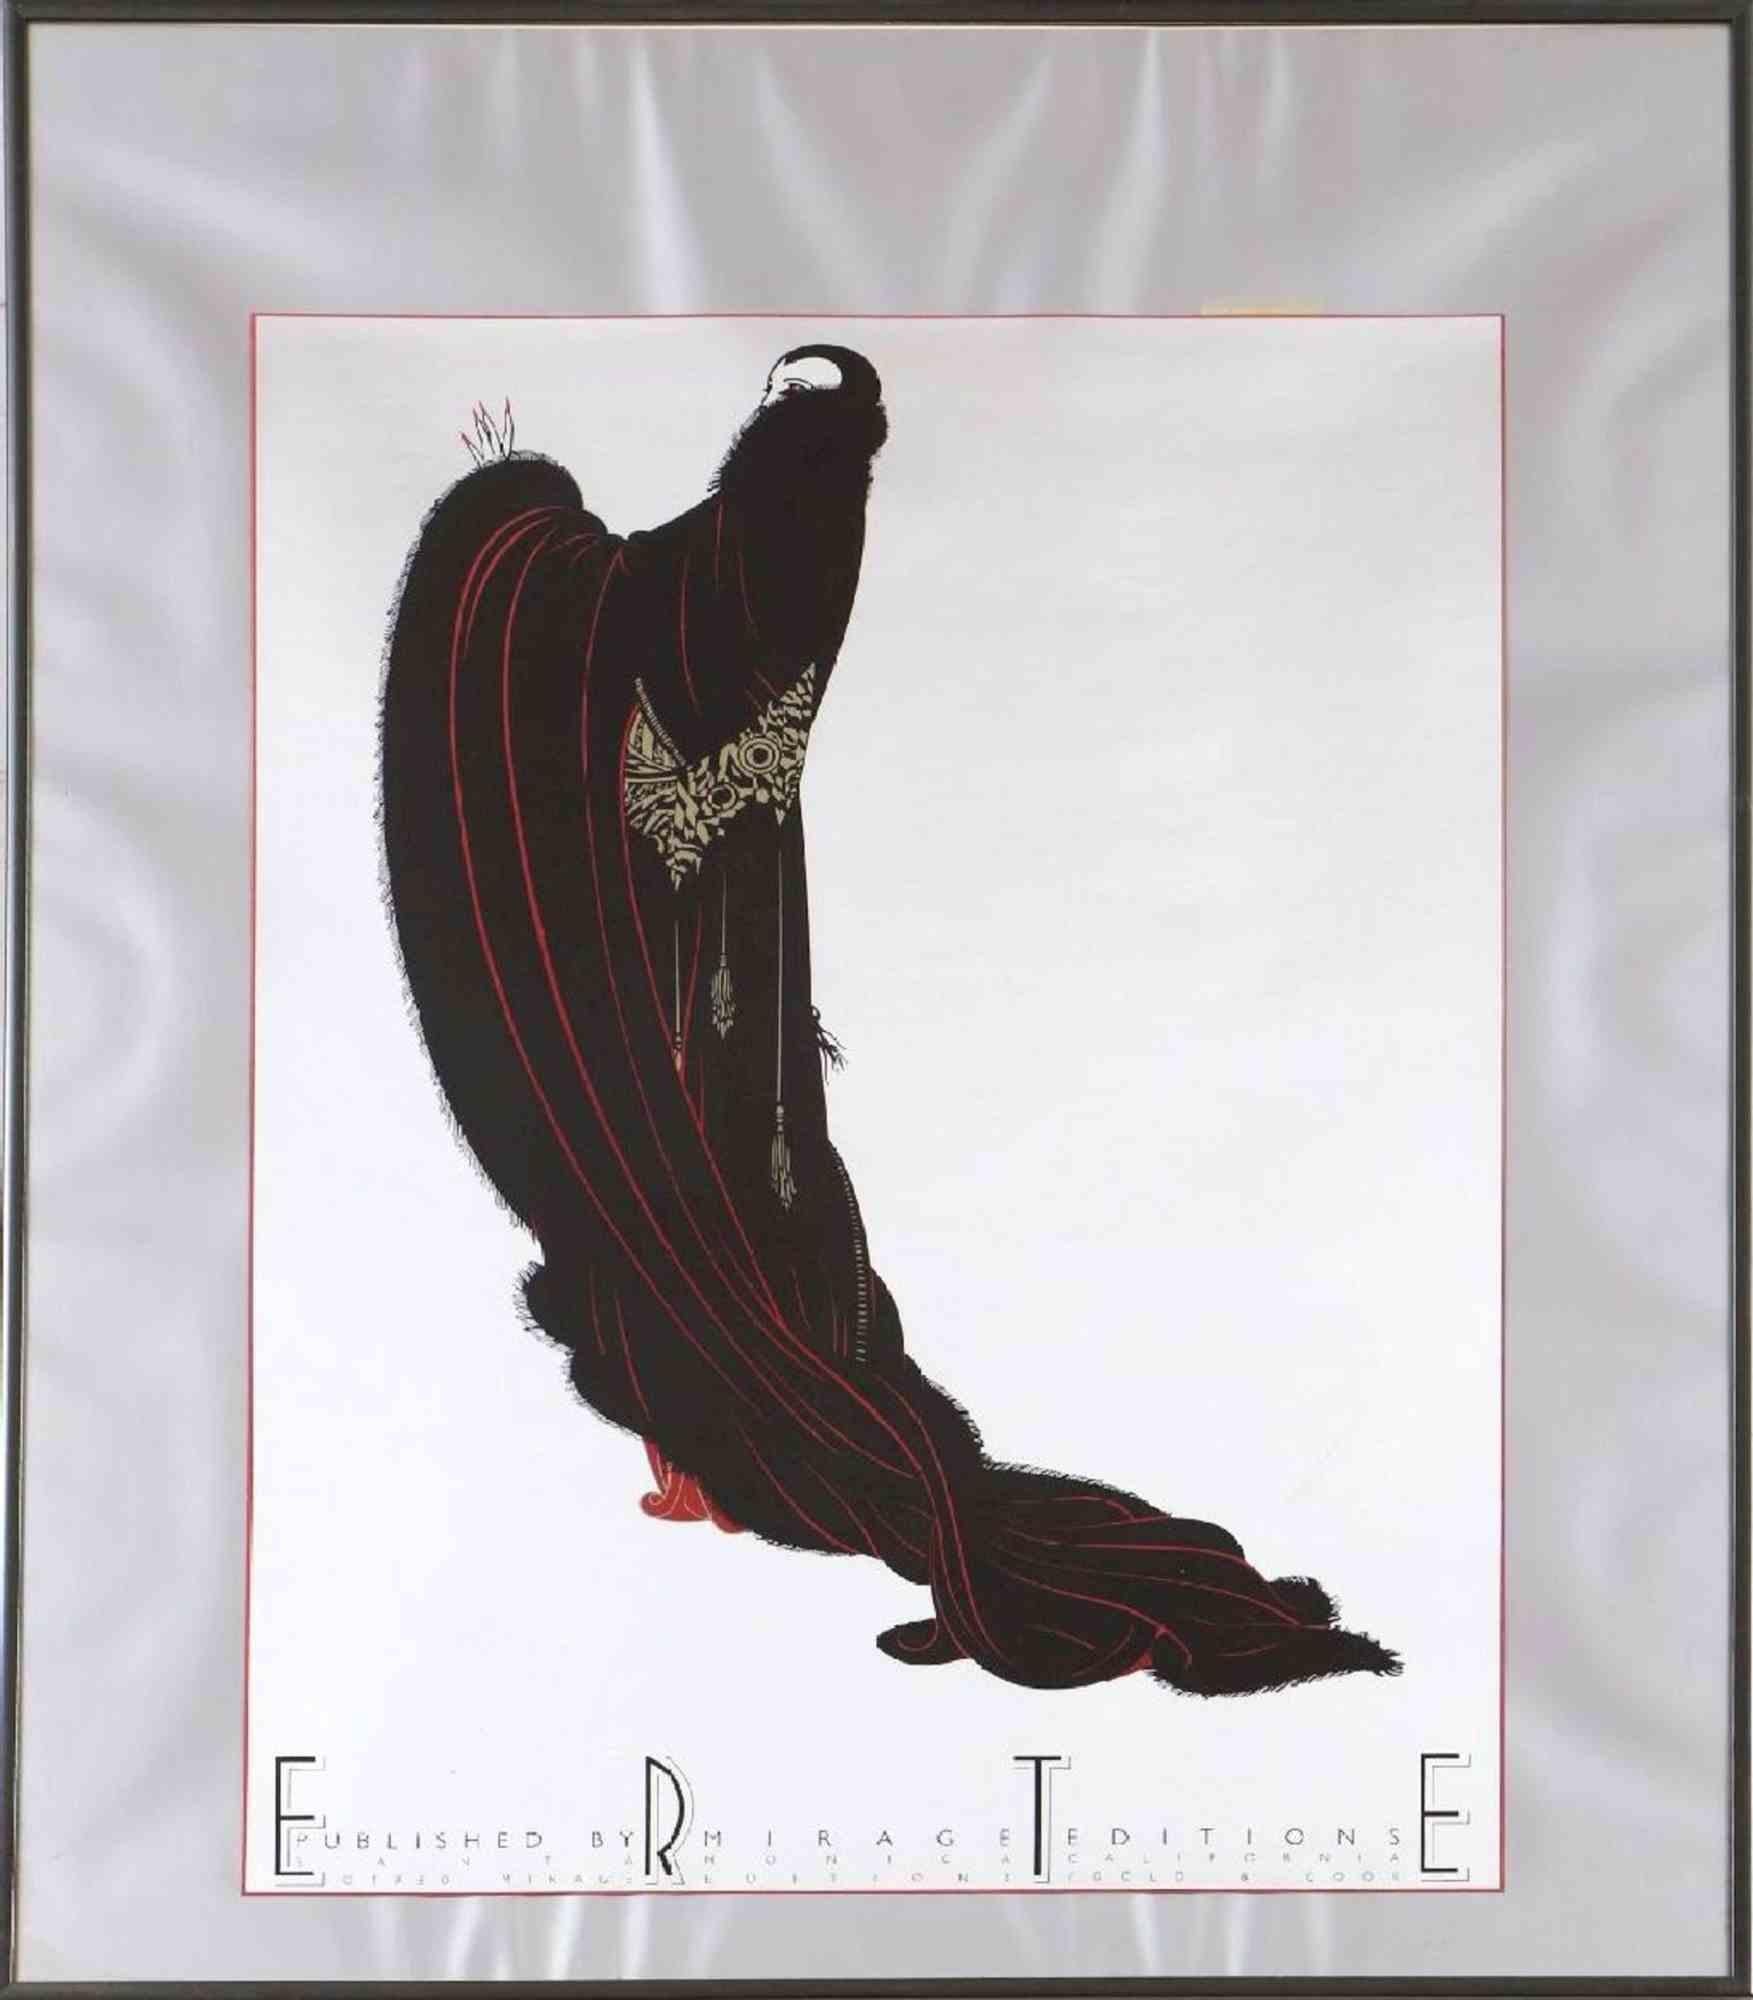 Soiree est une œuvre d'art originale réalisée par Erté (Romain de Tirtoff) en 1980.

Affiche d'exposition de l'artiste en couleurs mixtes.

Signé sur la plaque ¨Erté ; inscrit dans la gravure ¨Publié par MIRAGE EDITIONS (Santa Monica, Californie)